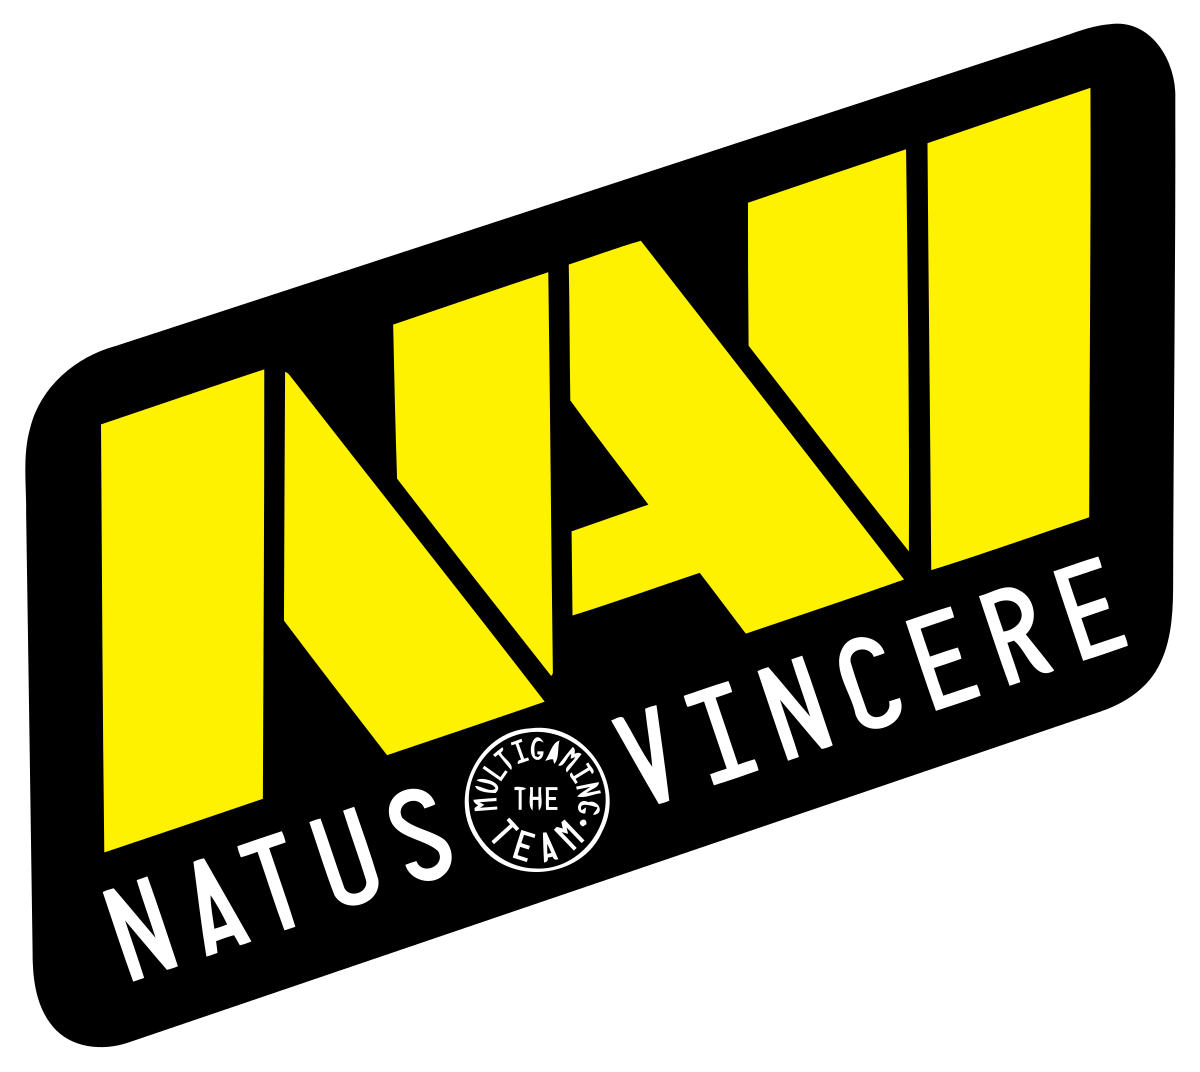 Natus Vincere обыграла Mind Games в рамках DPC для СНГ